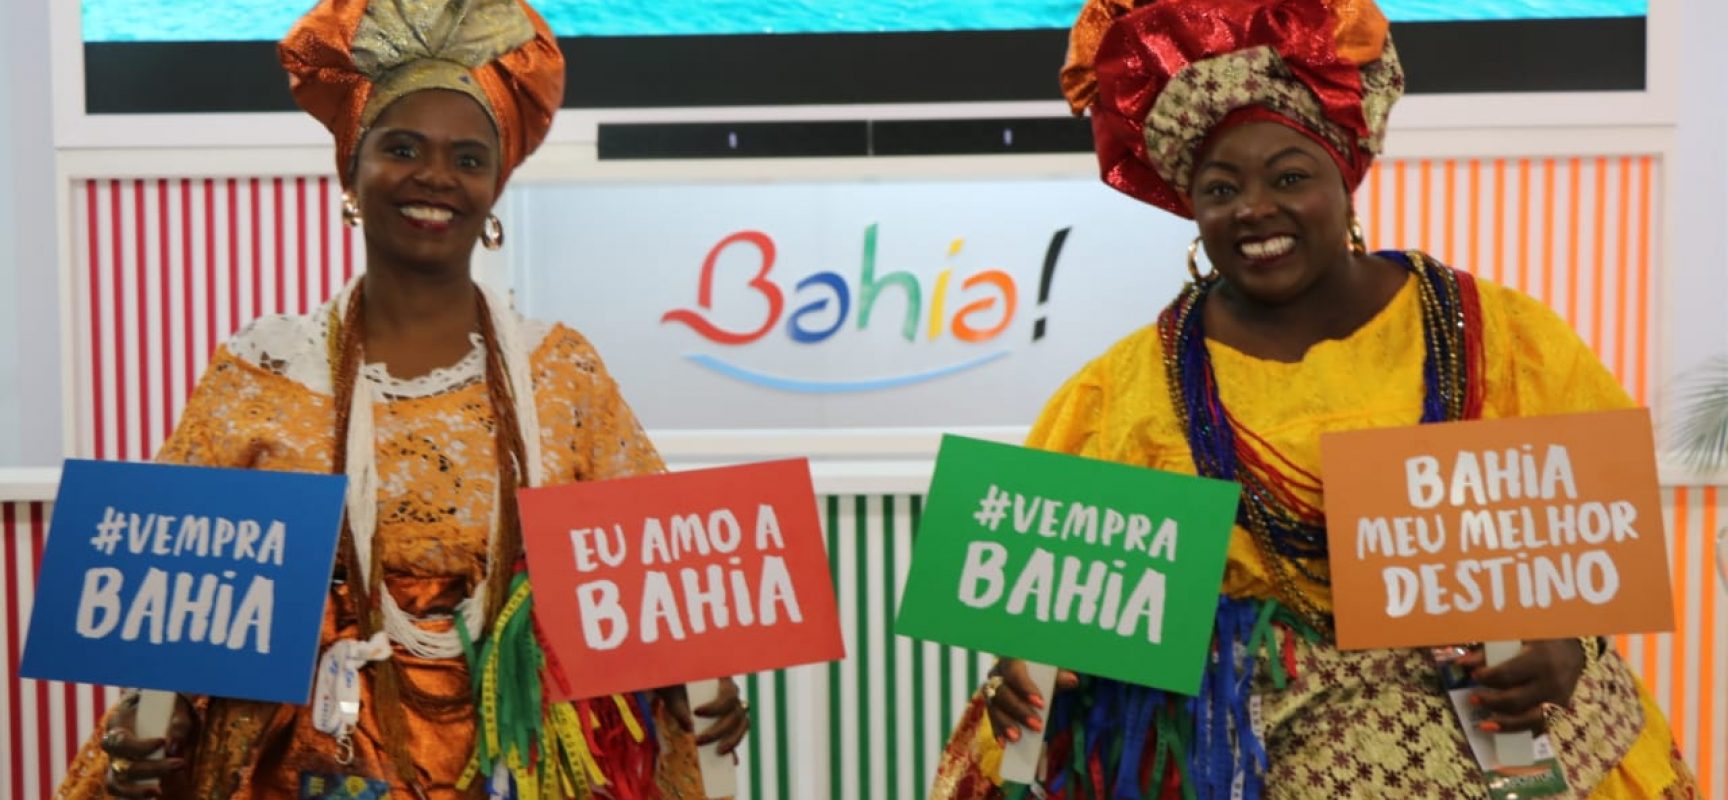 Bahia recebe prêmio de excelência turística em hospitalidade